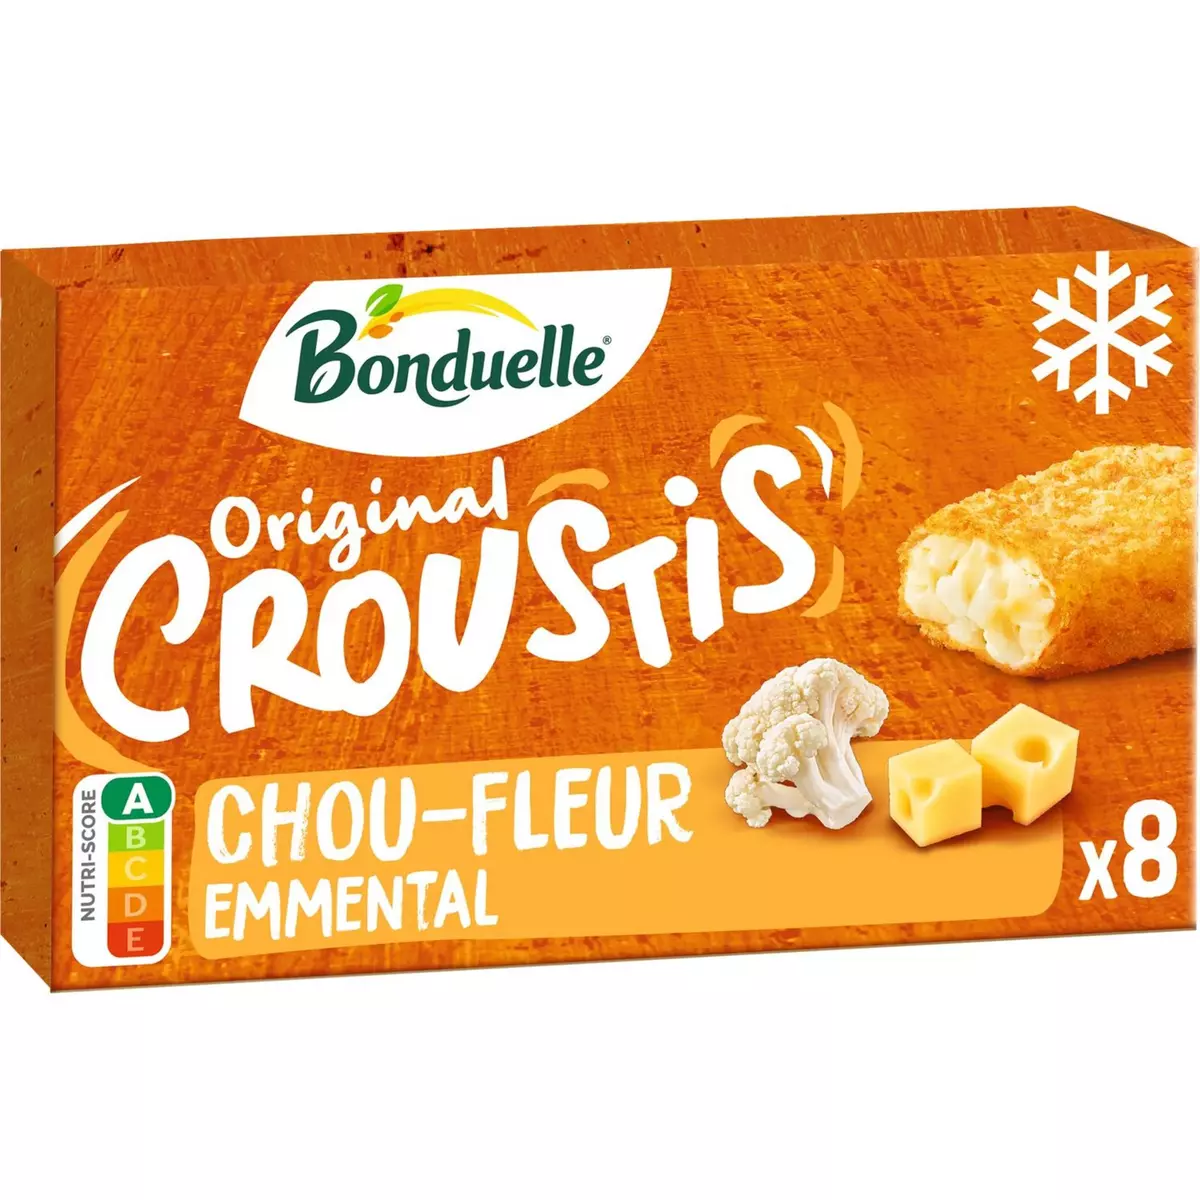 BONDUELLE Original croustis chou-fleur 8 pièces 305g